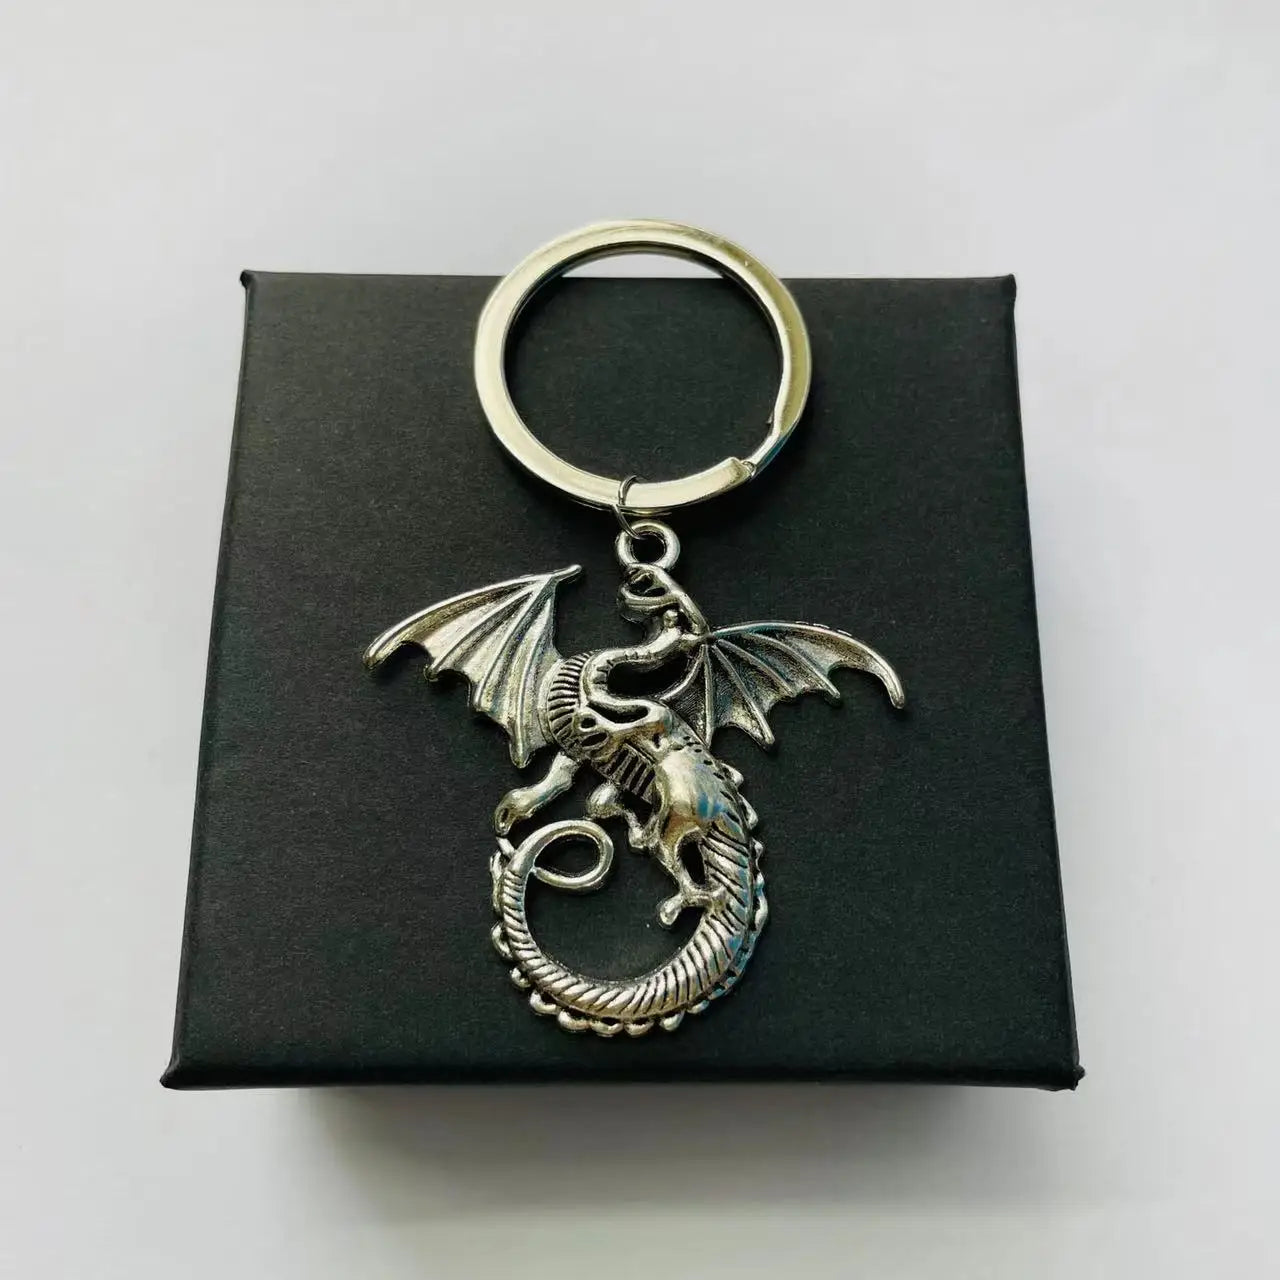 Aile Dragon pendentif porte-clés coffret Vintage médiéval Animal feu Dragon porte-clés Halloween noël nouvel an cadeau d'anniversaire